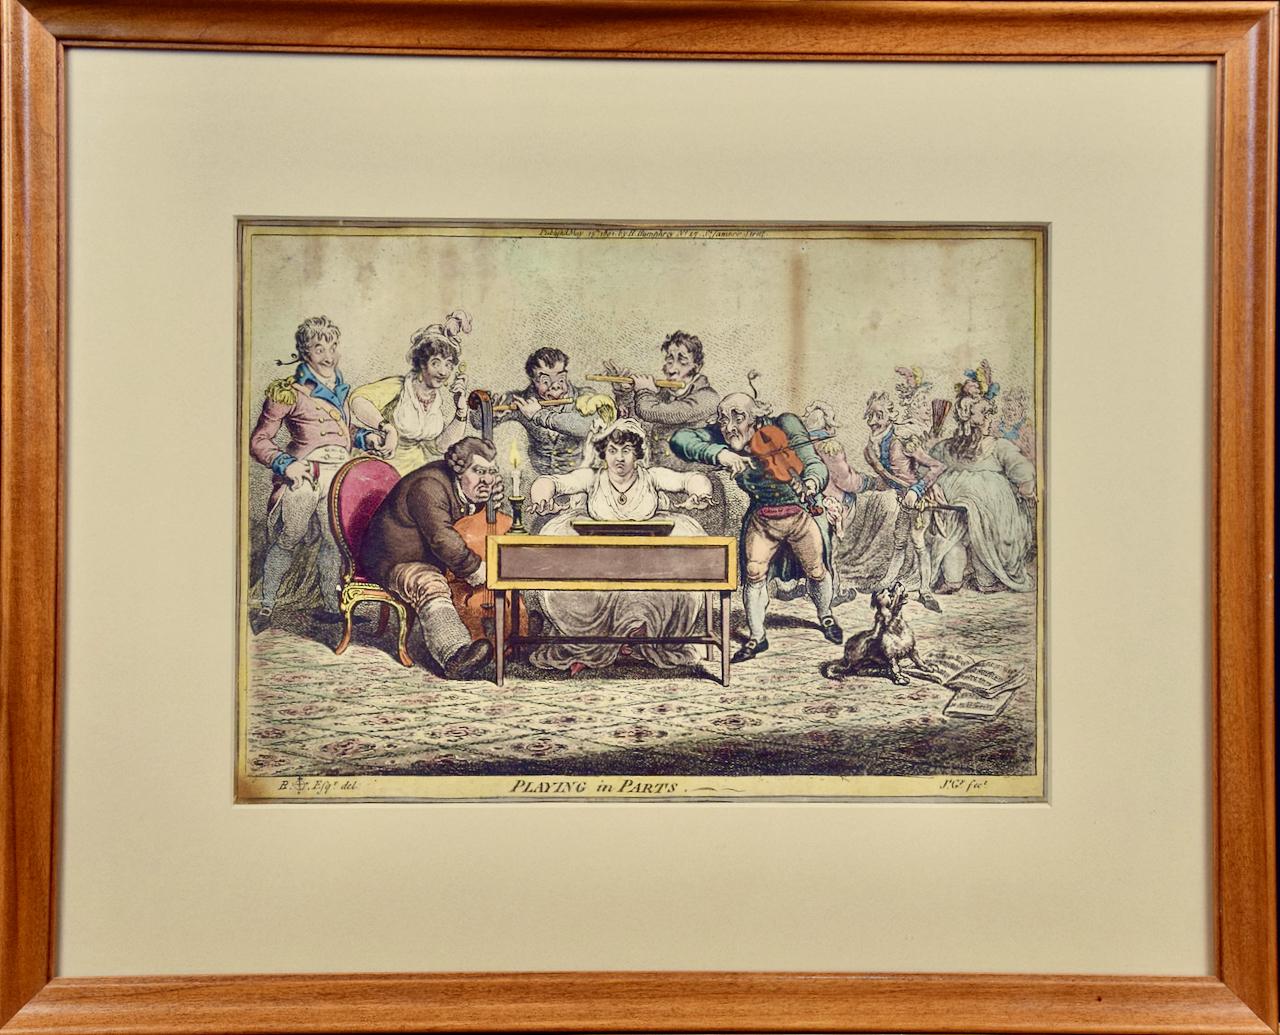 Diese handkolorierte Radierung und Aquatinta-Karikatur mit dem Titel "Playing in Parts" von James Gillray wurde am 15. Mai 1801 in London bei Hanna Humphrey, 27 St. James Street, veröffentlicht. Der Druck ist in der Platte rechts unten signiert.